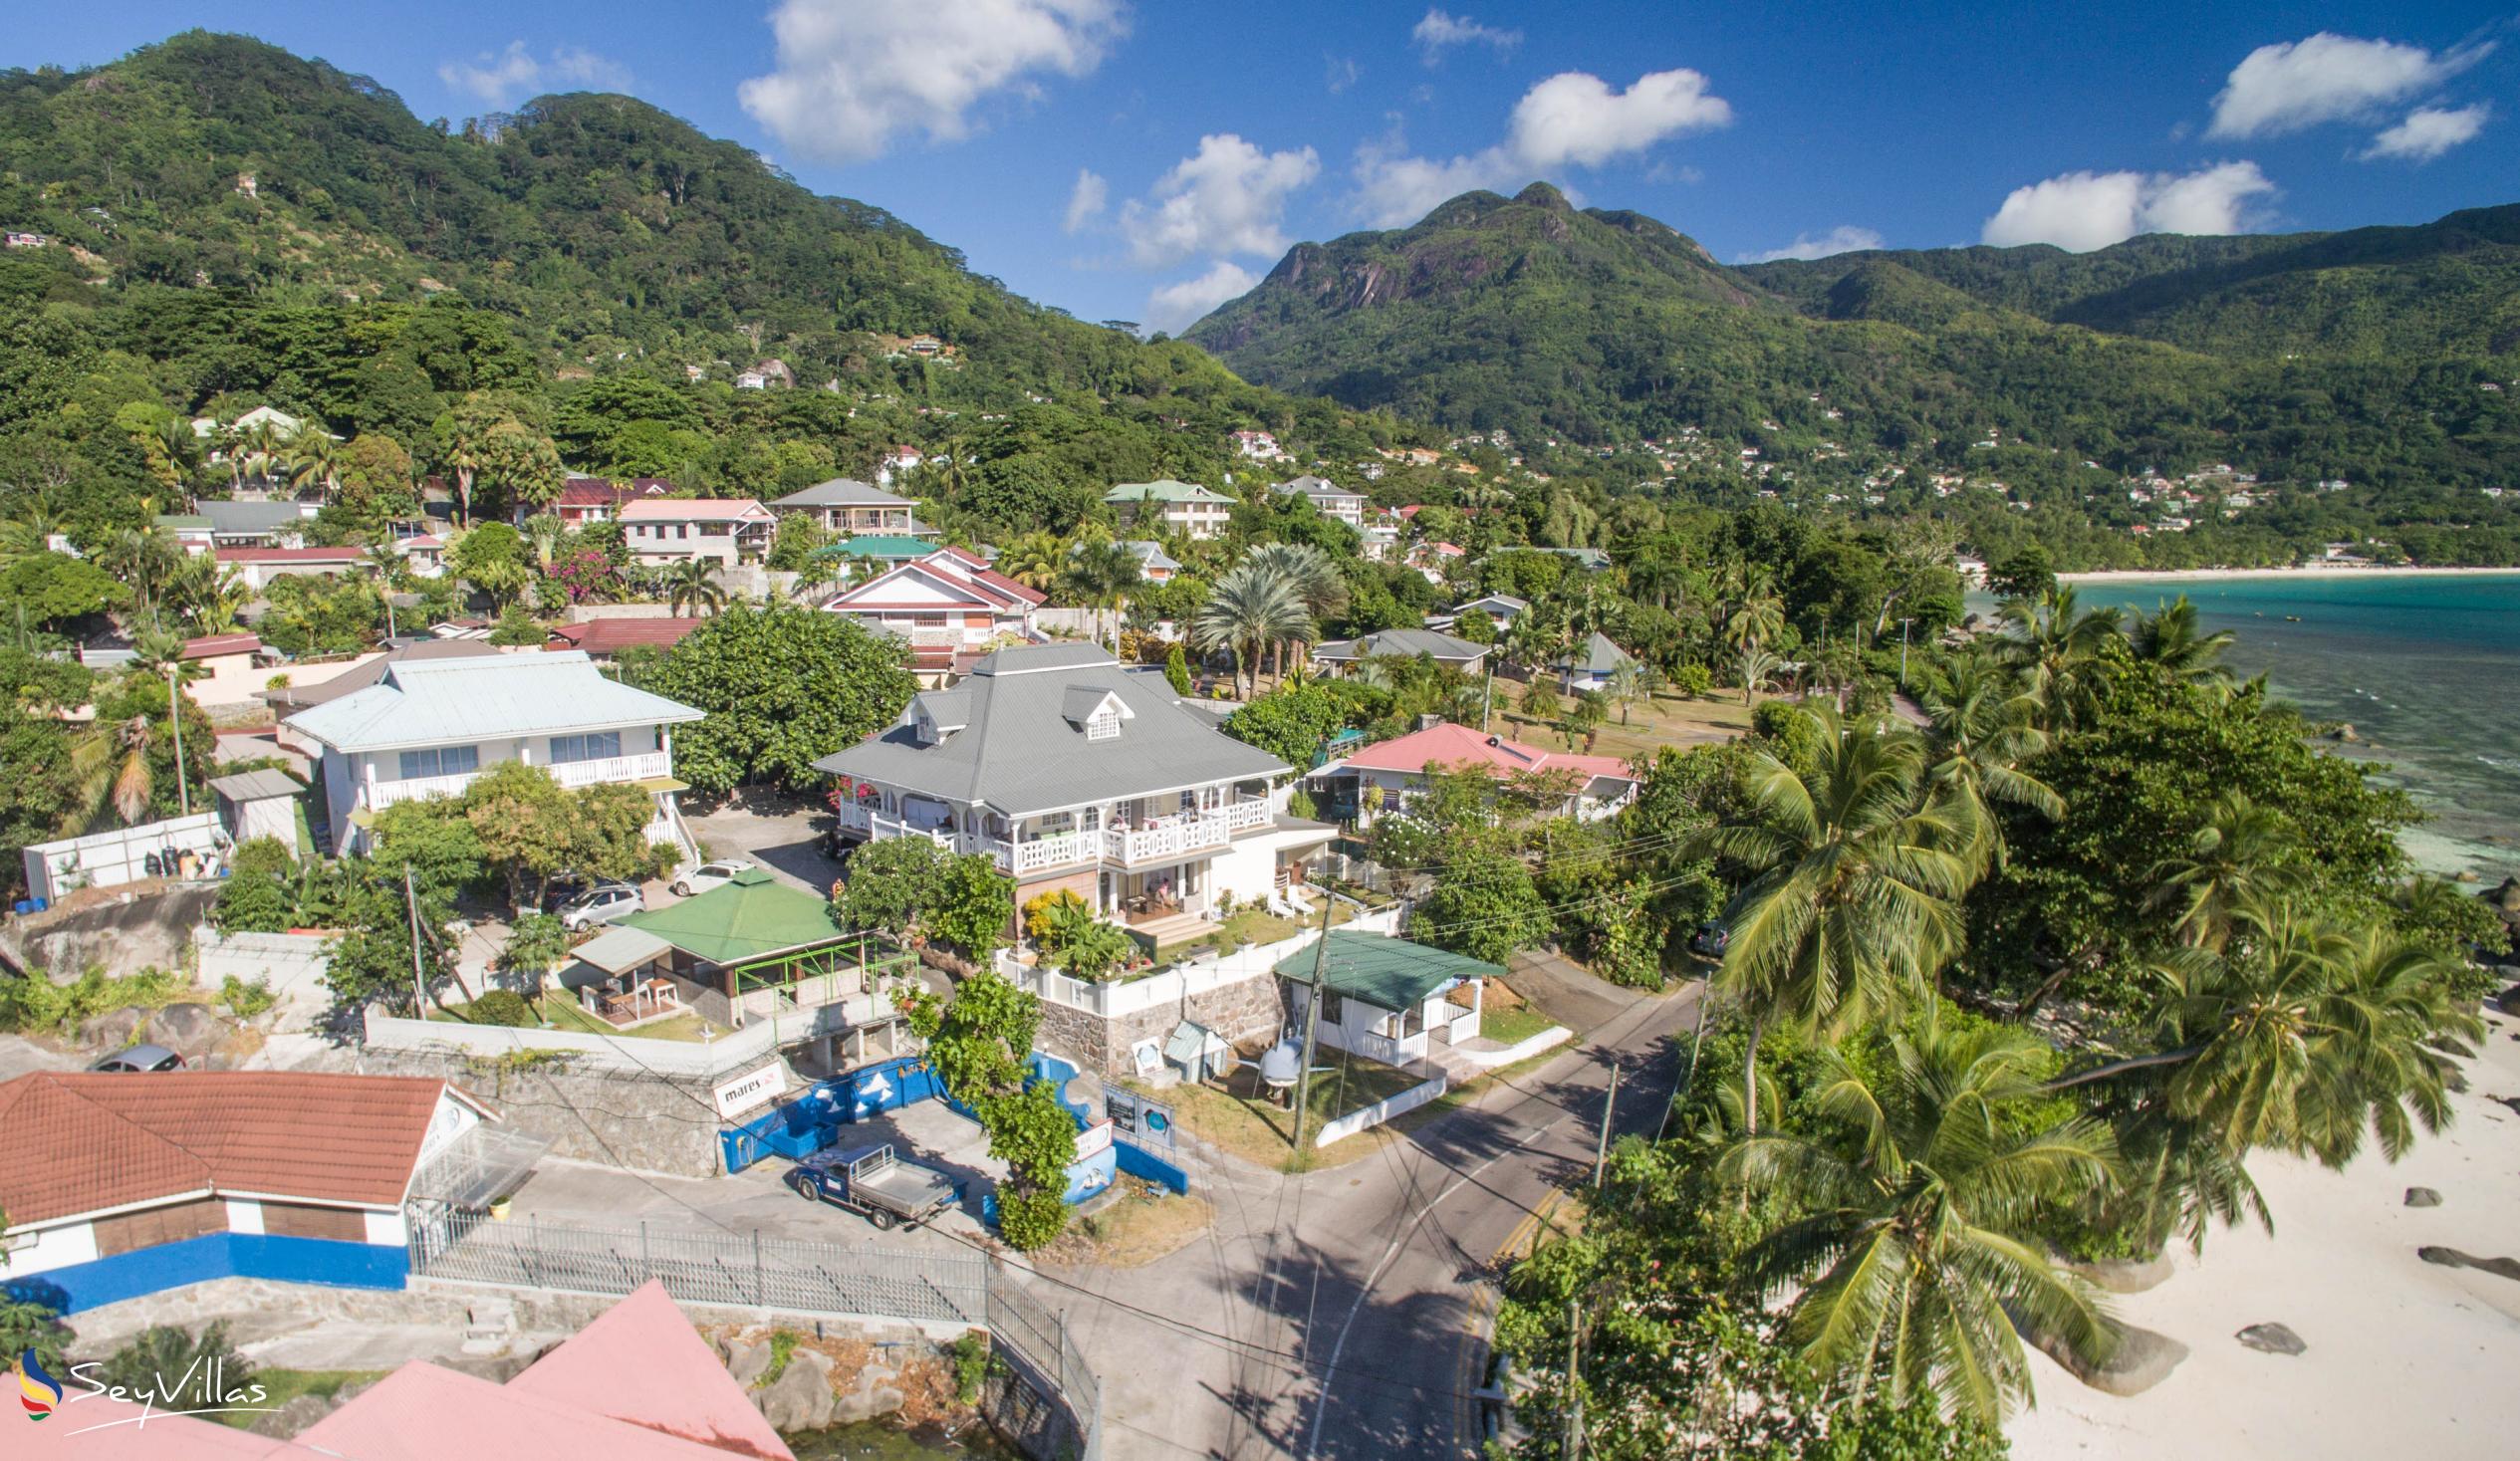 Foto 30: The Diver's Lodge - Posizione - Mahé (Seychelles)